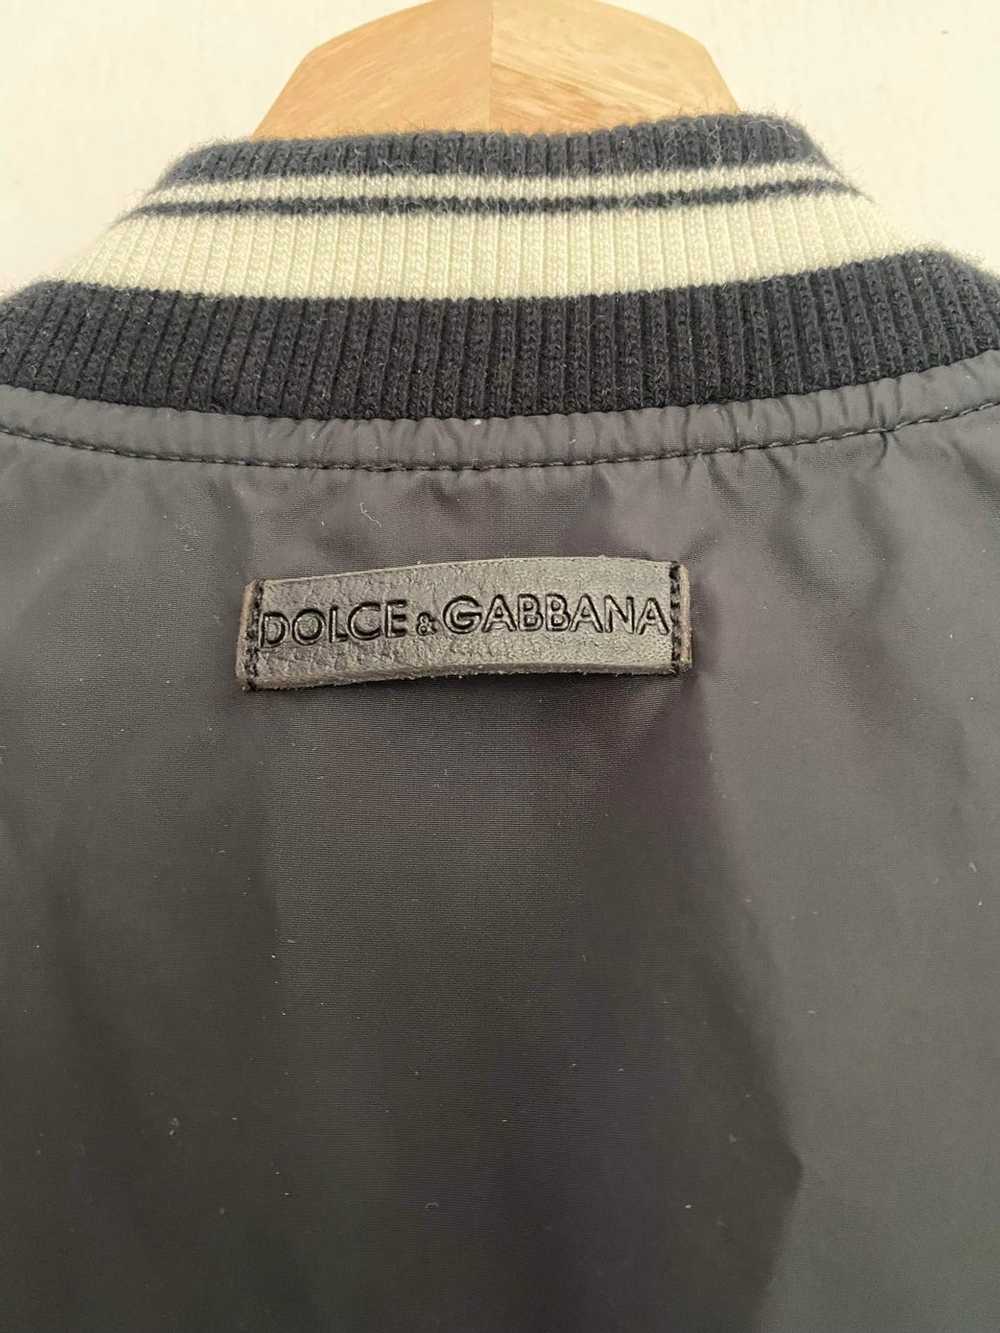 Dolce & Gabbana Dolce & Gabbana spring 2014 jacket - image 4